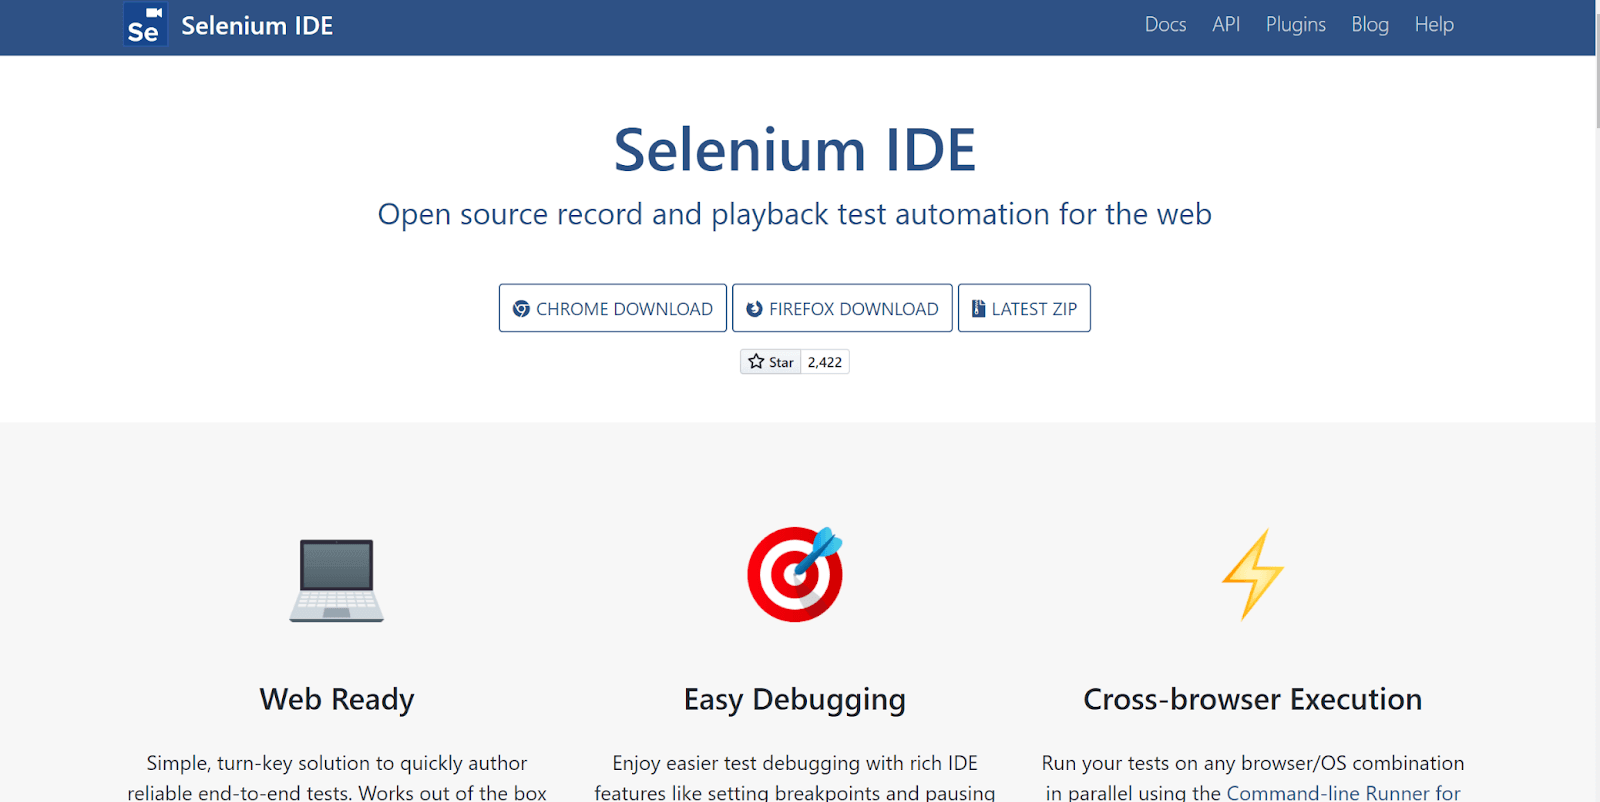 5. Selenium IDE